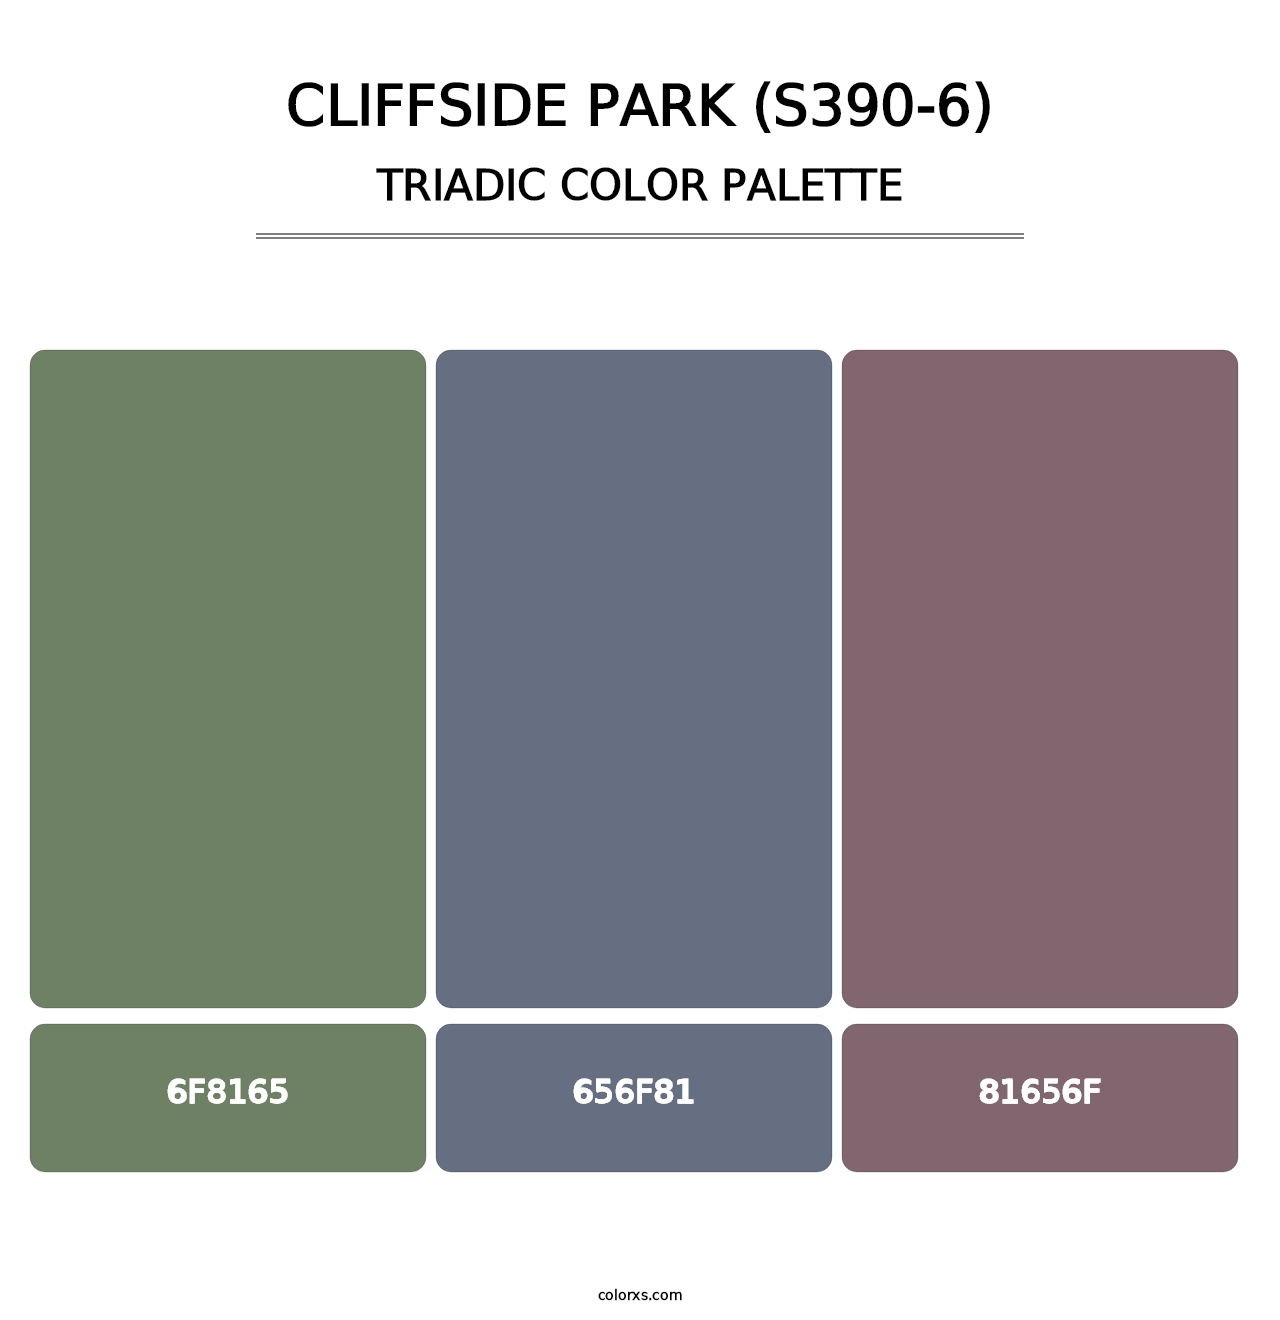 Cliffside Park (S390-6) - Triadic Color Palette